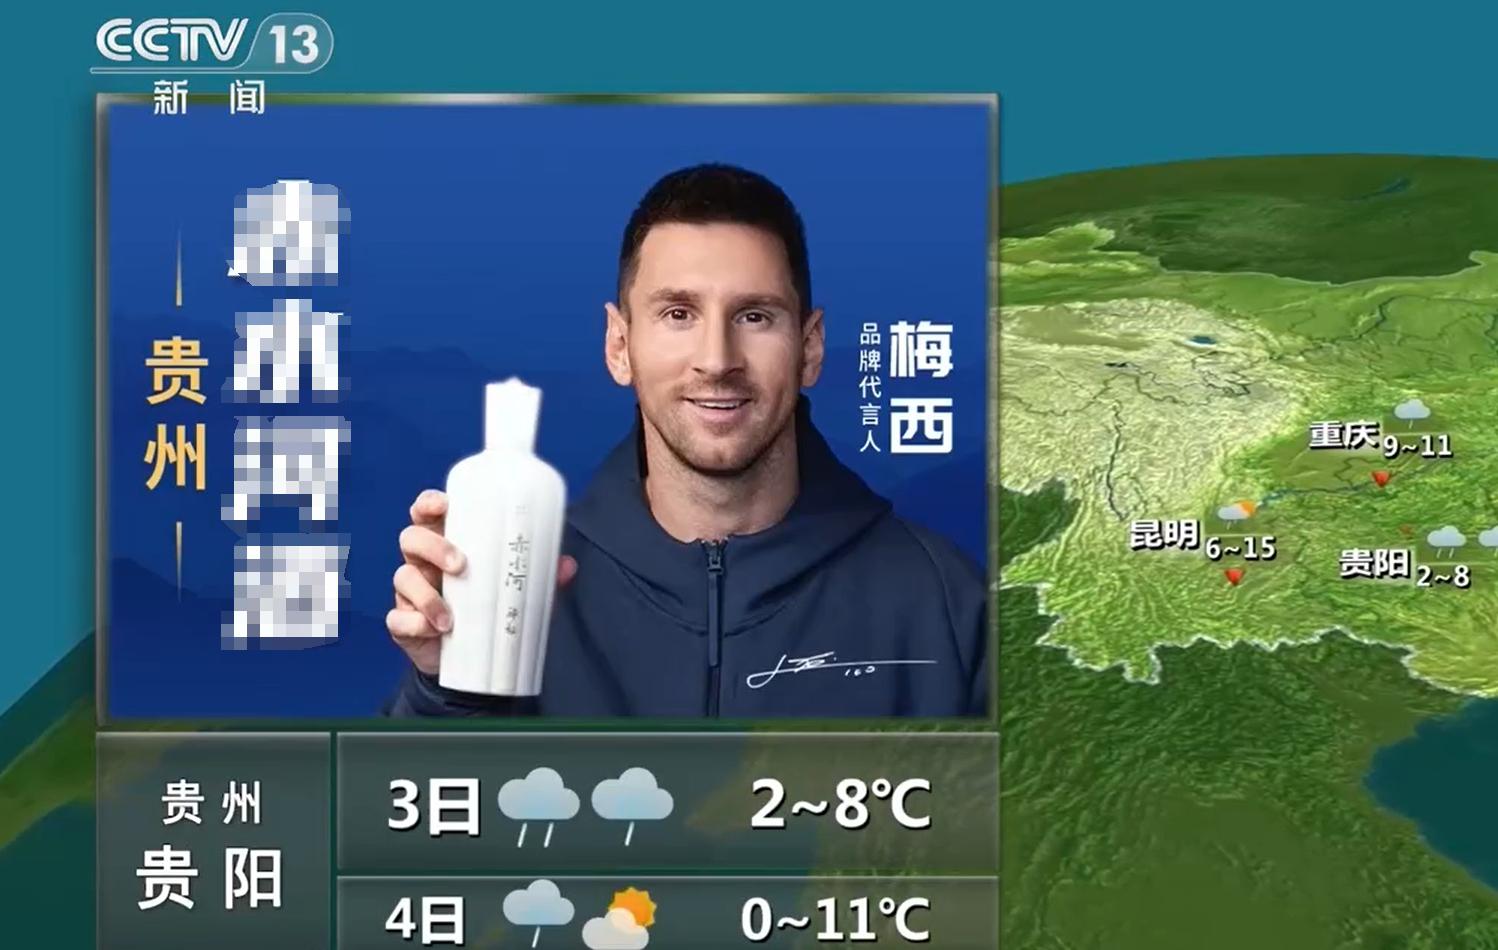 央视天气预告将梅西代言广告画面替换(1)